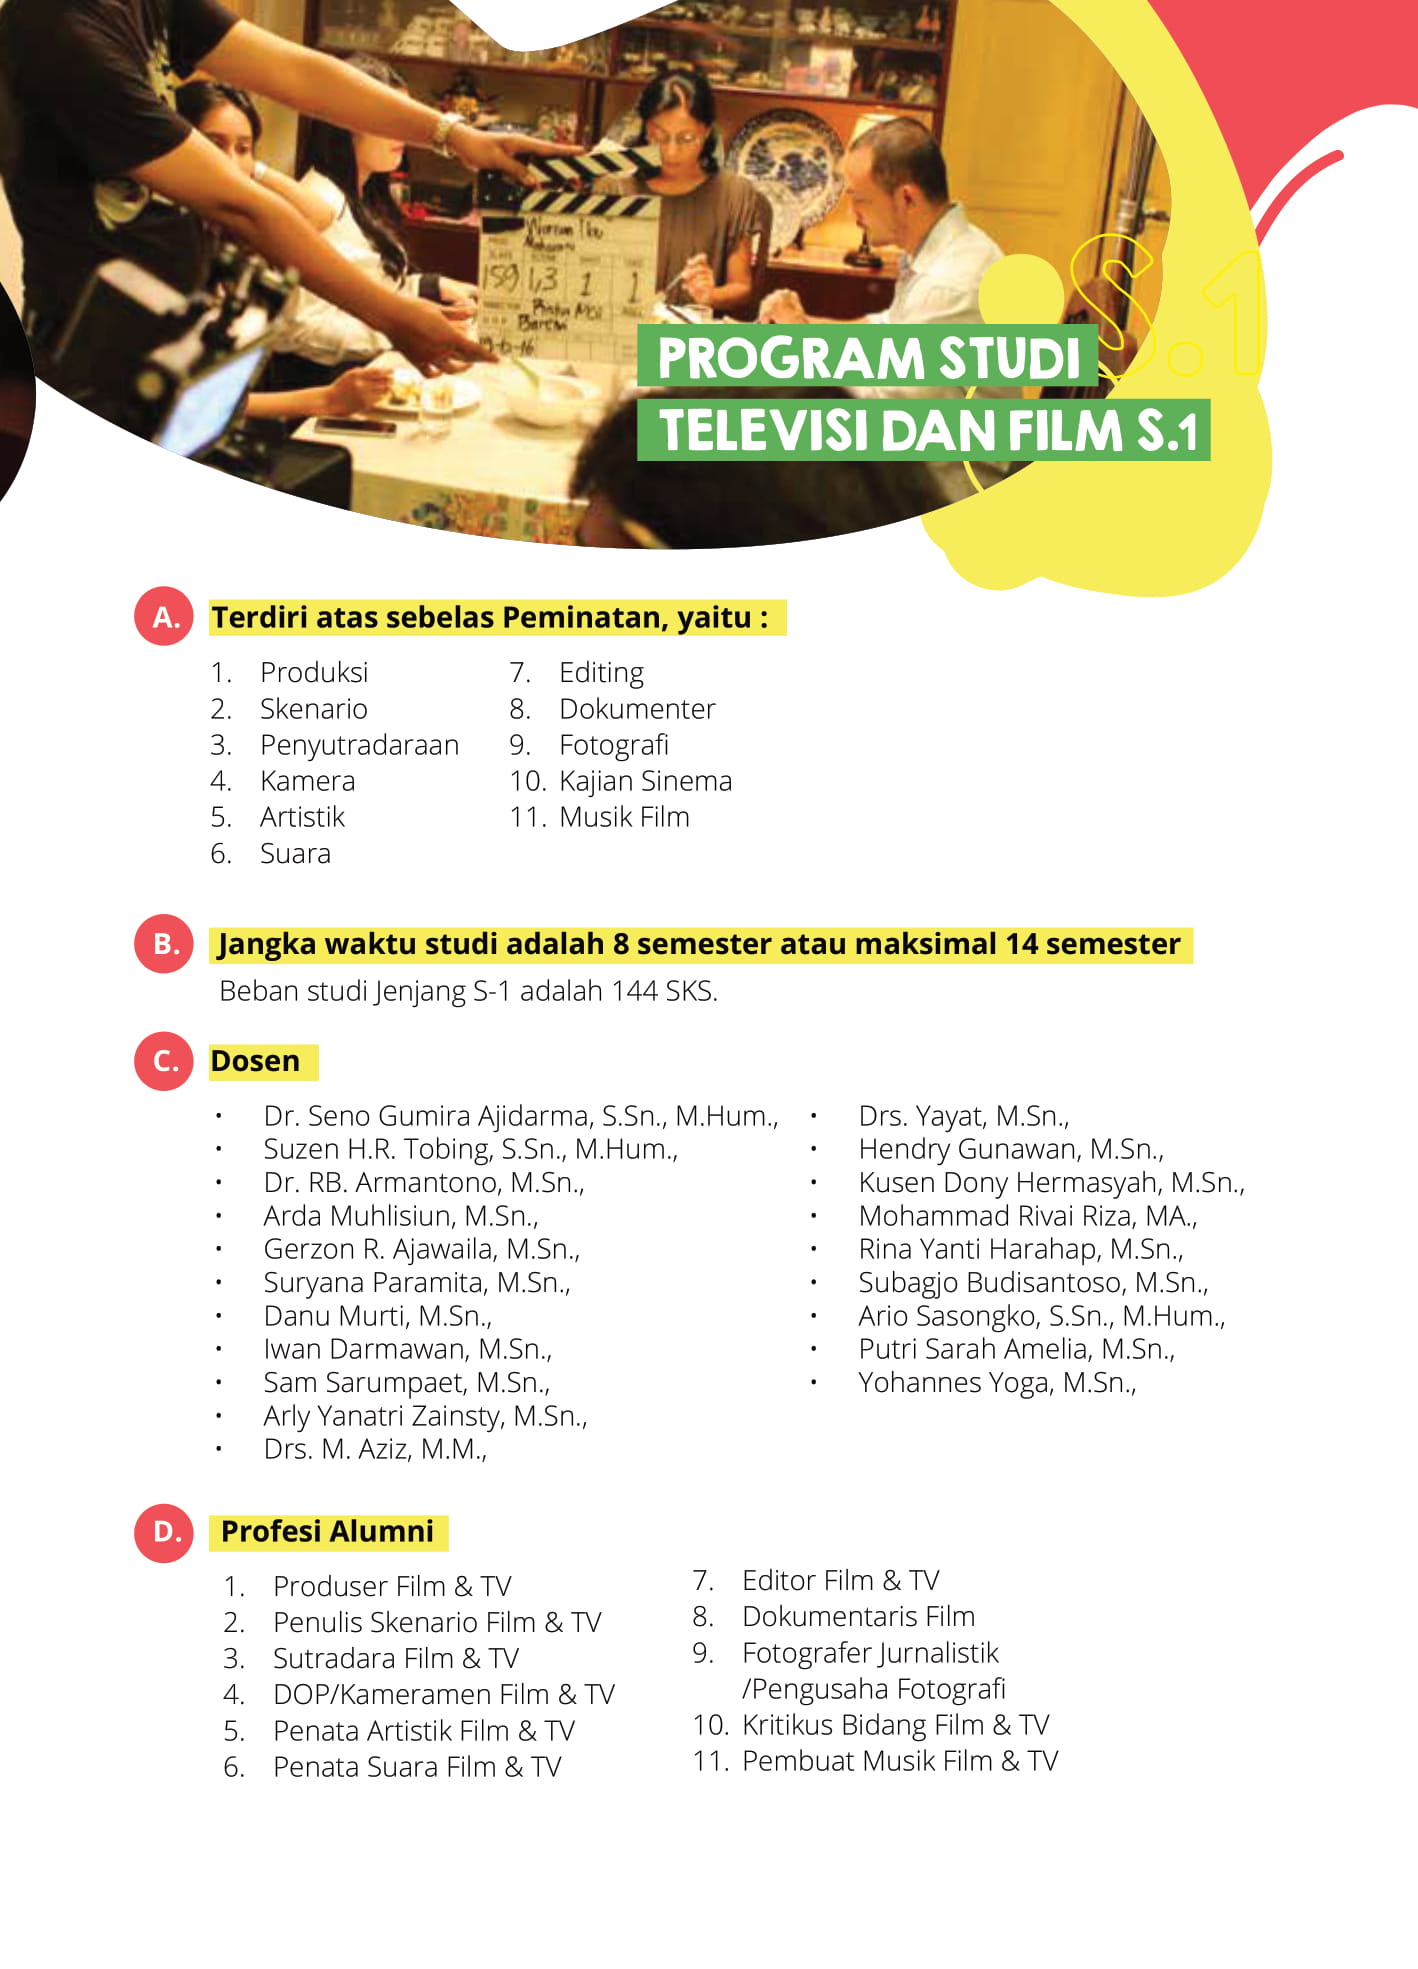 Prodi Musik Ikj - Pemberitahuan Perpanjangan WFH - 14 Agustus - Institut Kesenian Jakarta / Piano masterclass daring interaktif 7 agustus 2020, 20:00 wib.